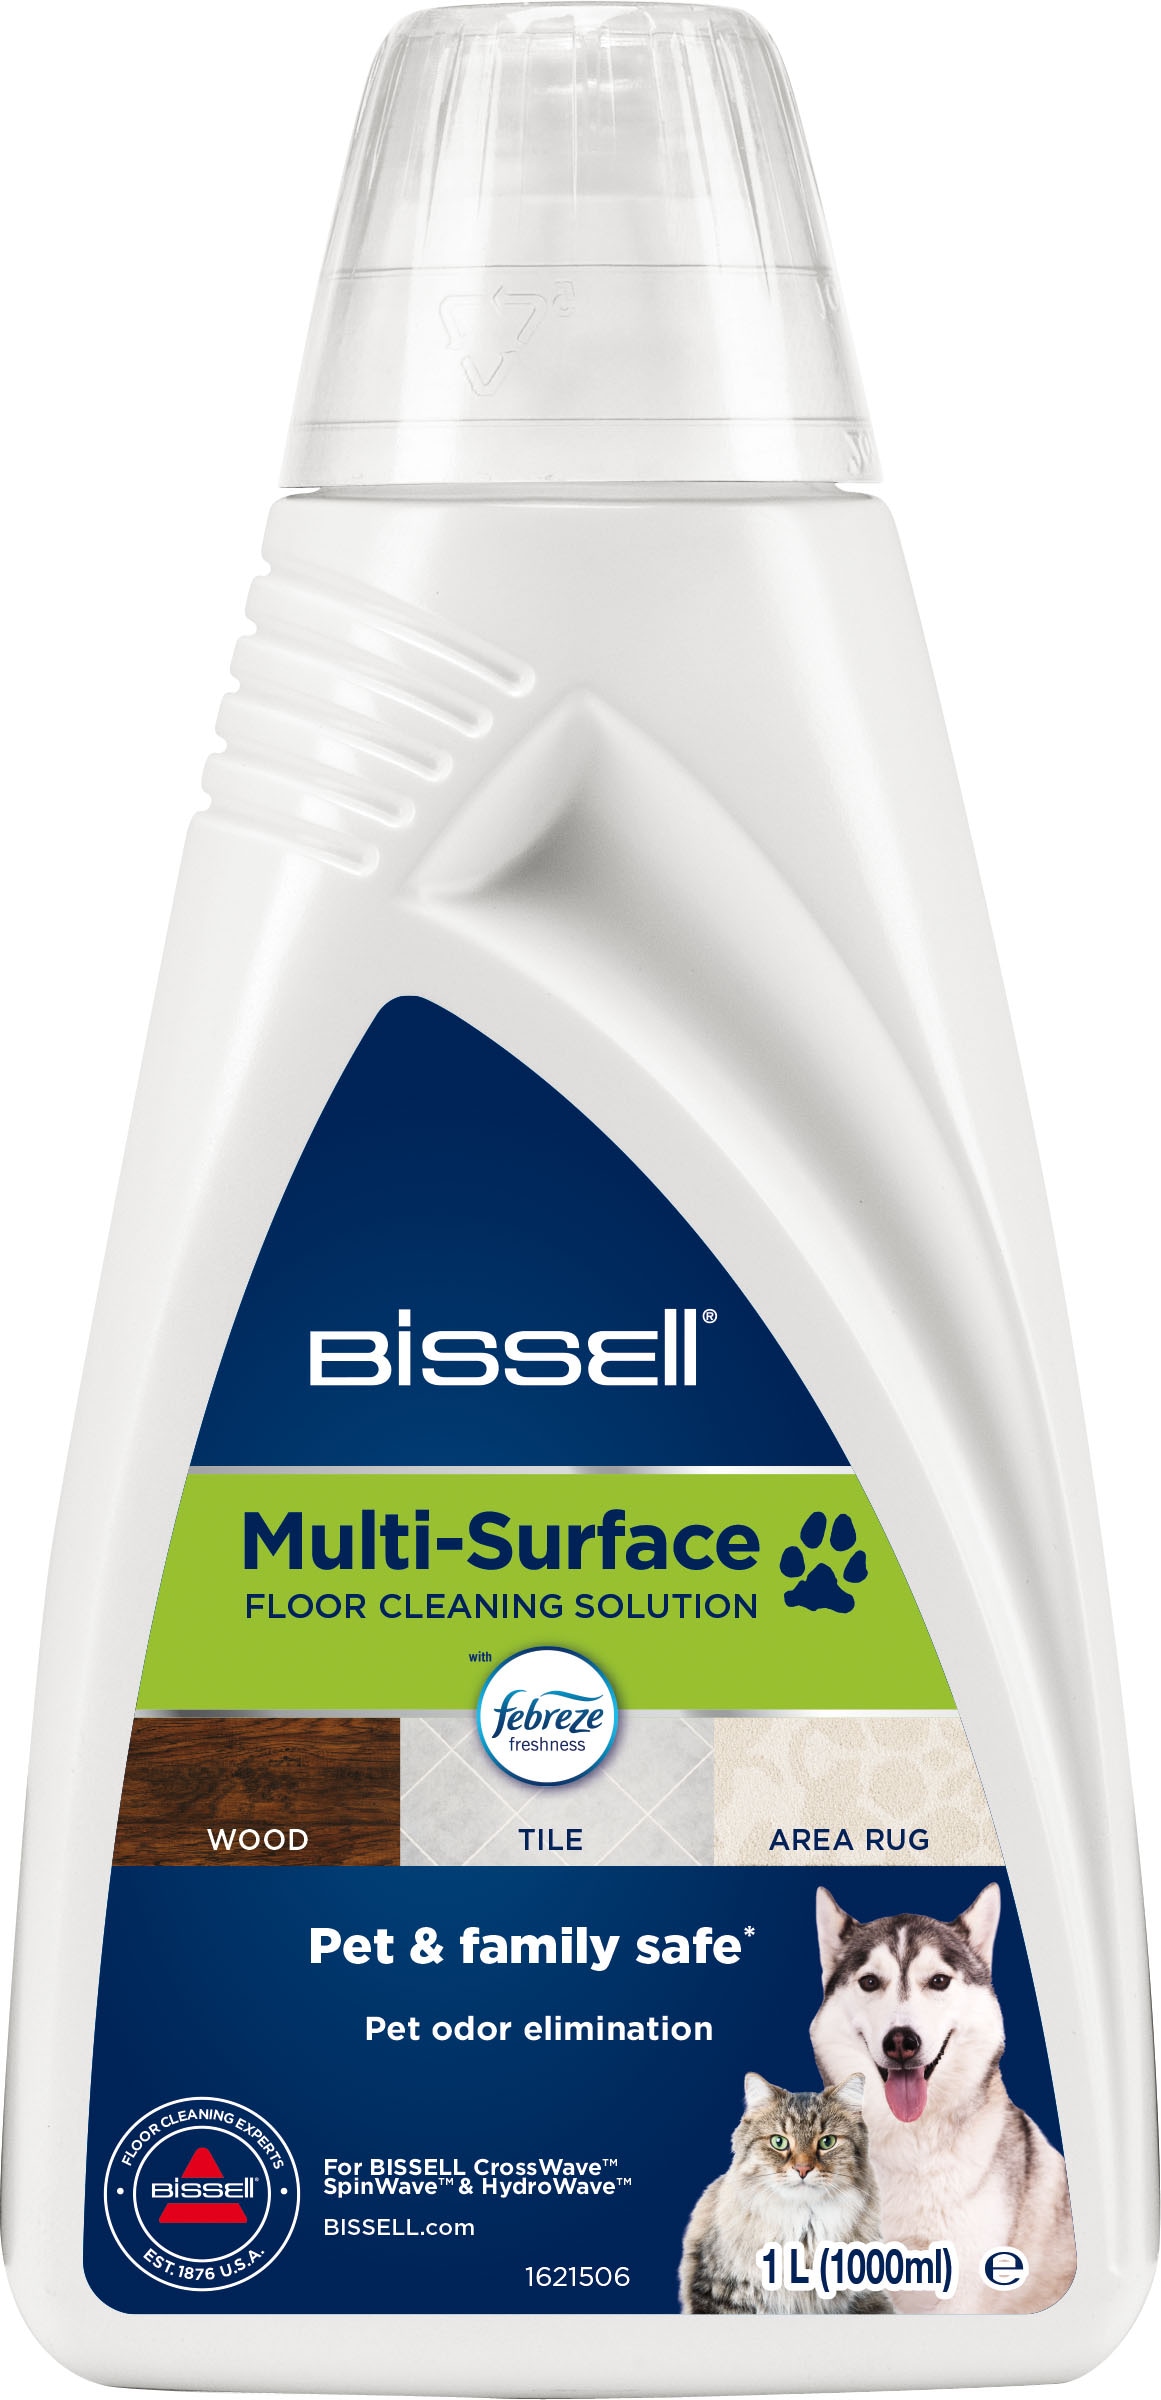 Bissell Fussbodenreiniger »Multi Surface PET 1L Febreze-2550«, (1 St.)